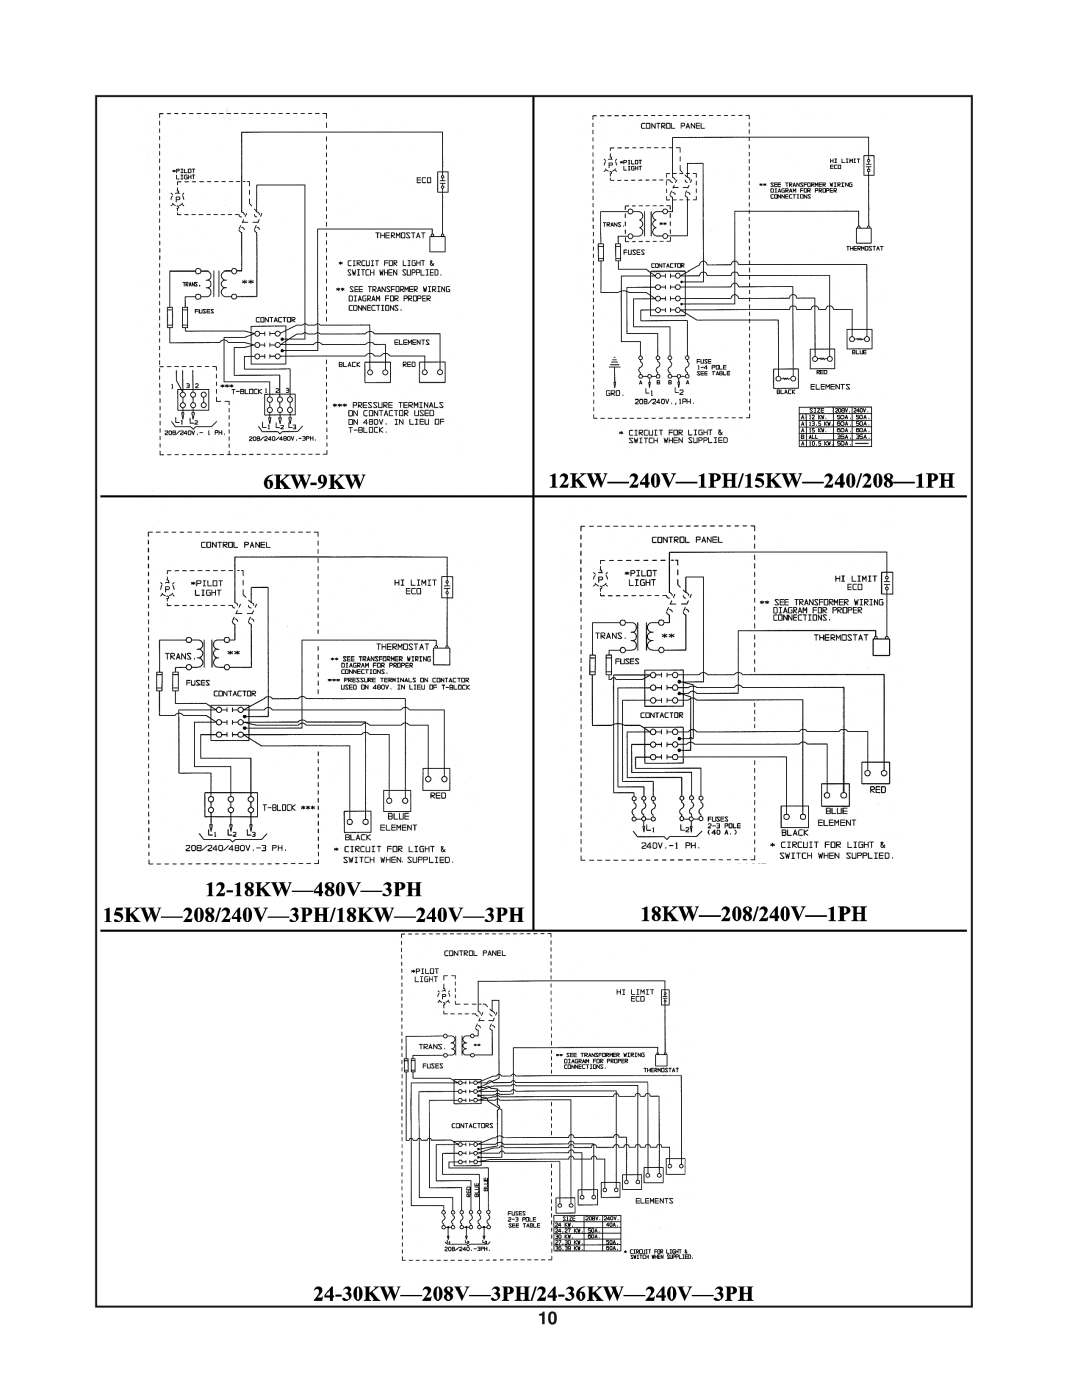 Lochinvar SSB-i & s--01 installation instructions 